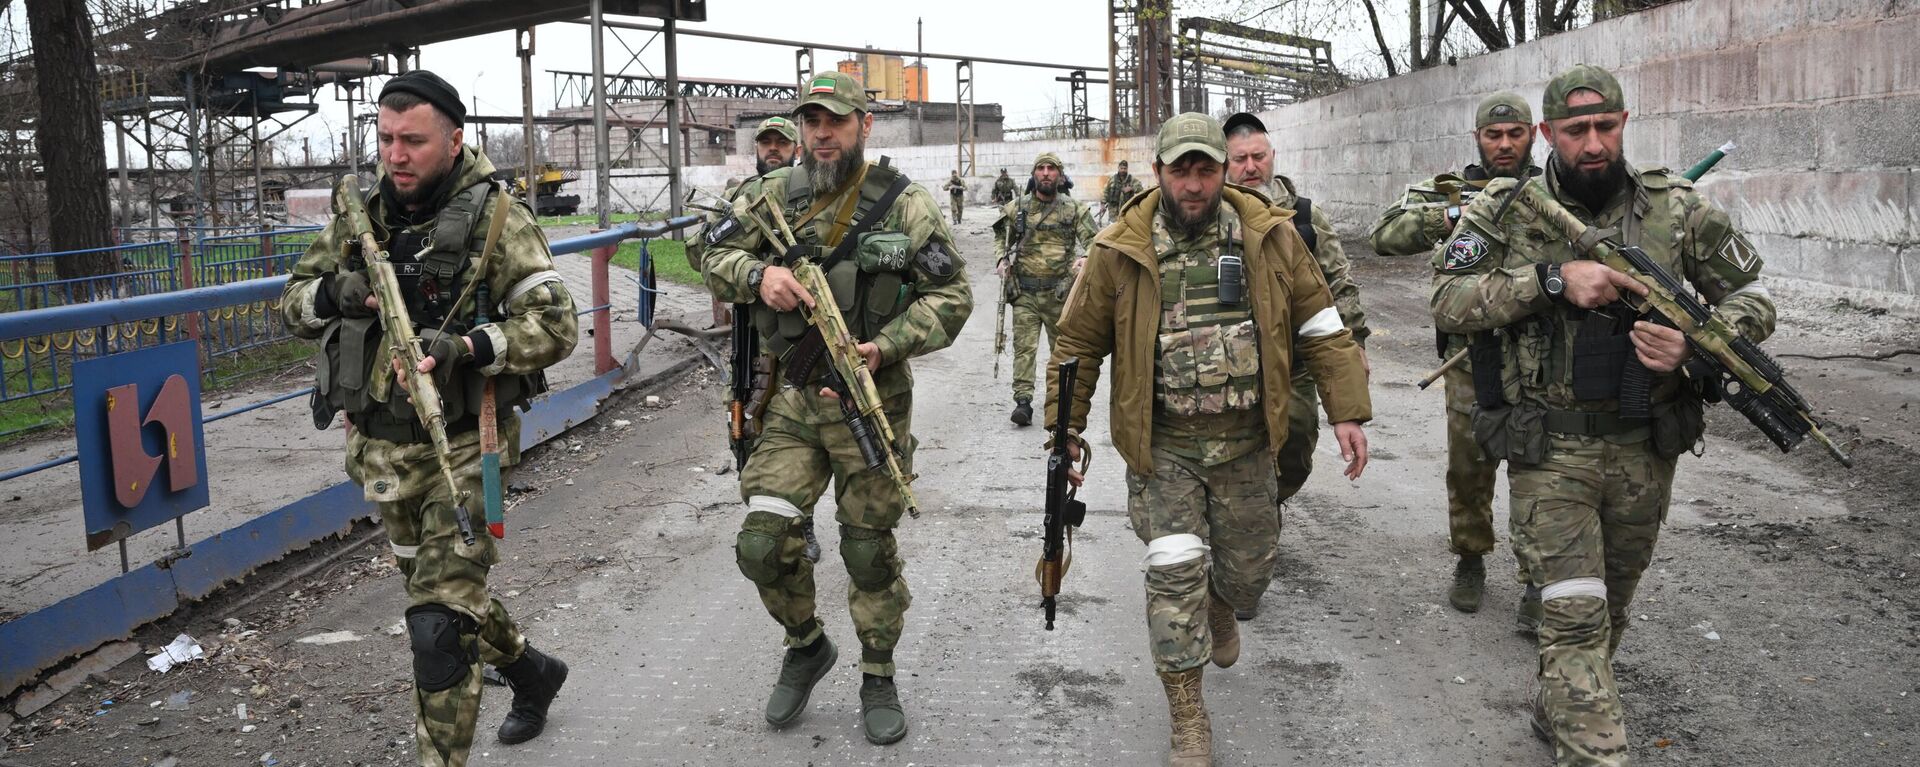 Các binh sĩ của đơn vị phản ứng nhanh đặc biệt Akhmat bảo vệ khu vực của Công trình Gang thép Ilyich, thuộc quyền kiểm soát của Cộng hòa Nhân dân Donetsk, ở Mariupol, Cộng hòa Nhân dân Donetsk - Sputnik Việt Nam, 1920, 17.04.2022